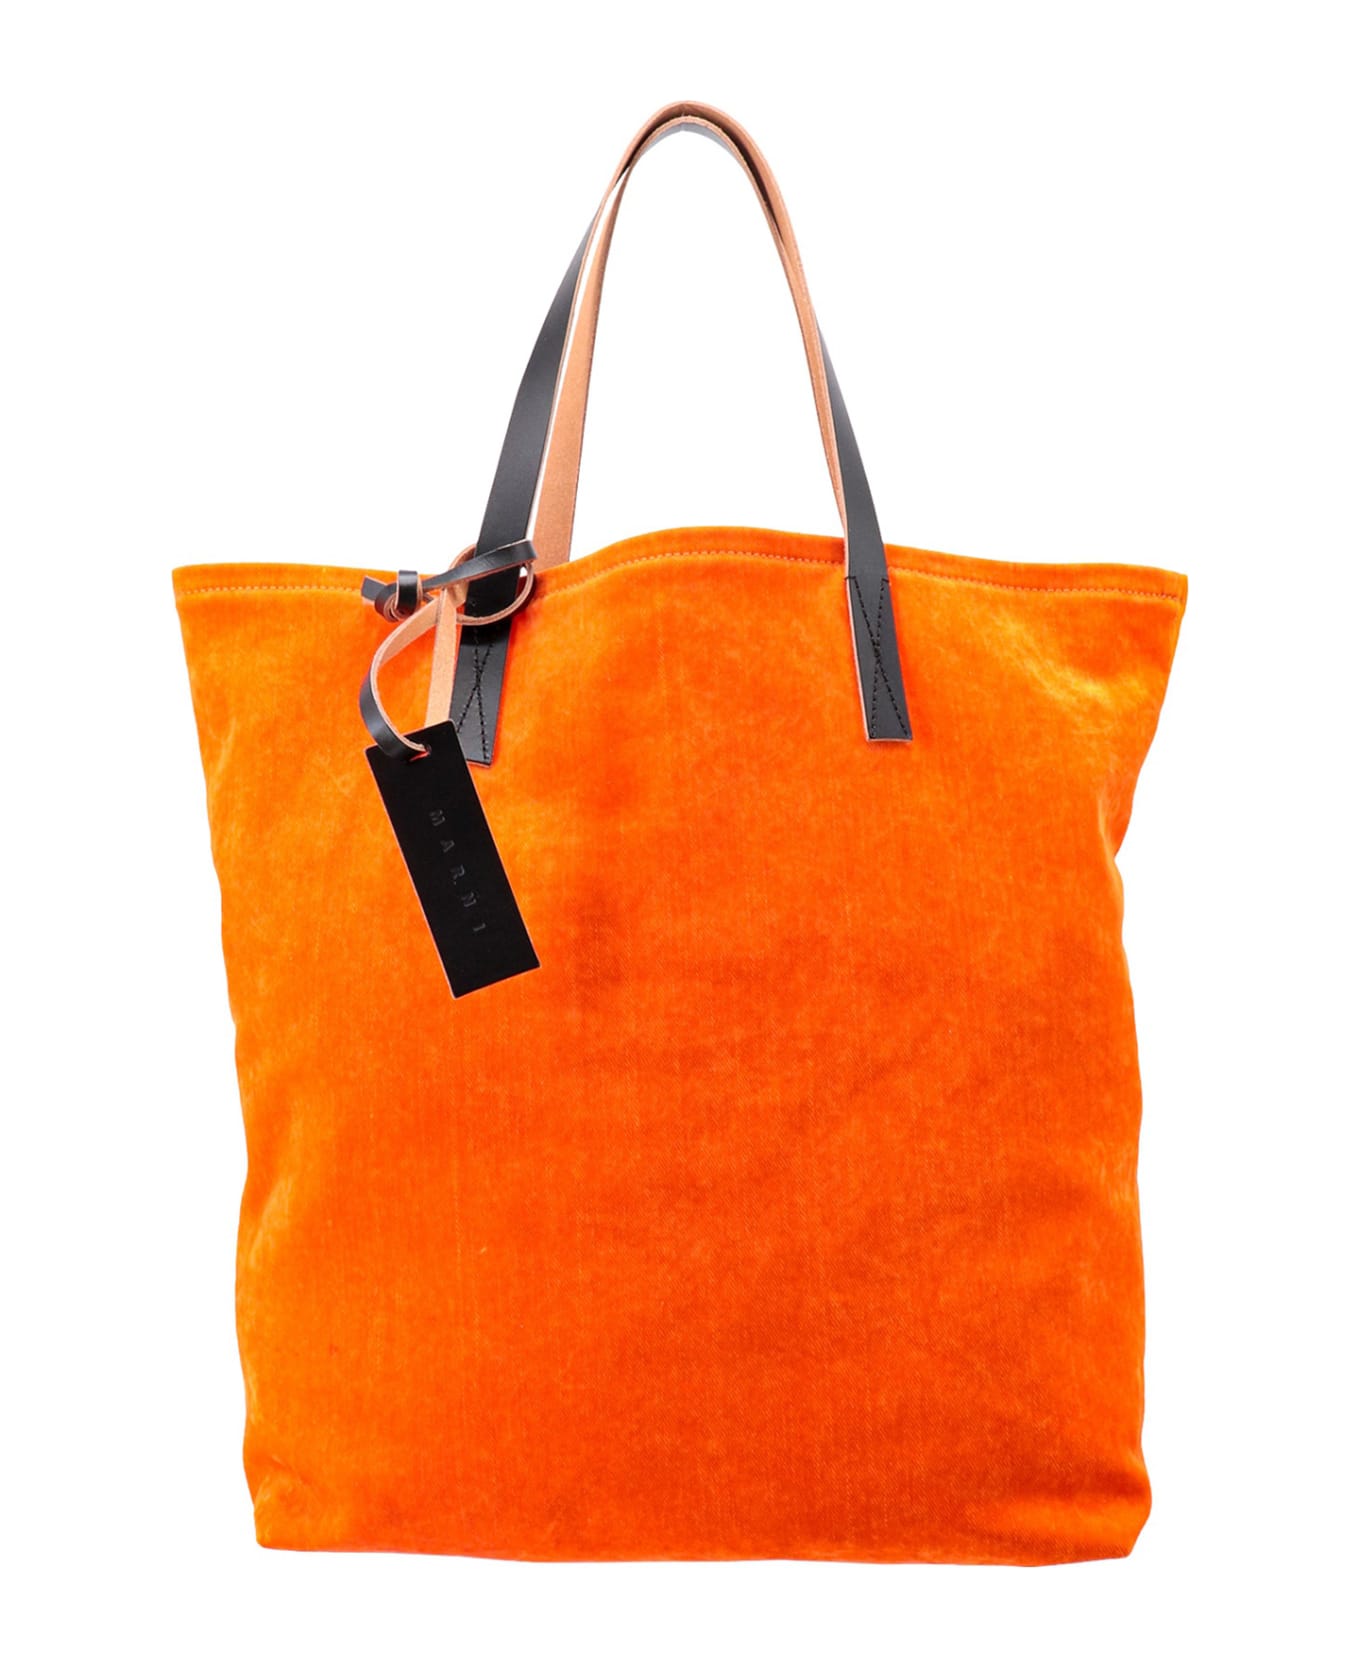 Marni Shoulder Bag - Orange ショルダーバッグ